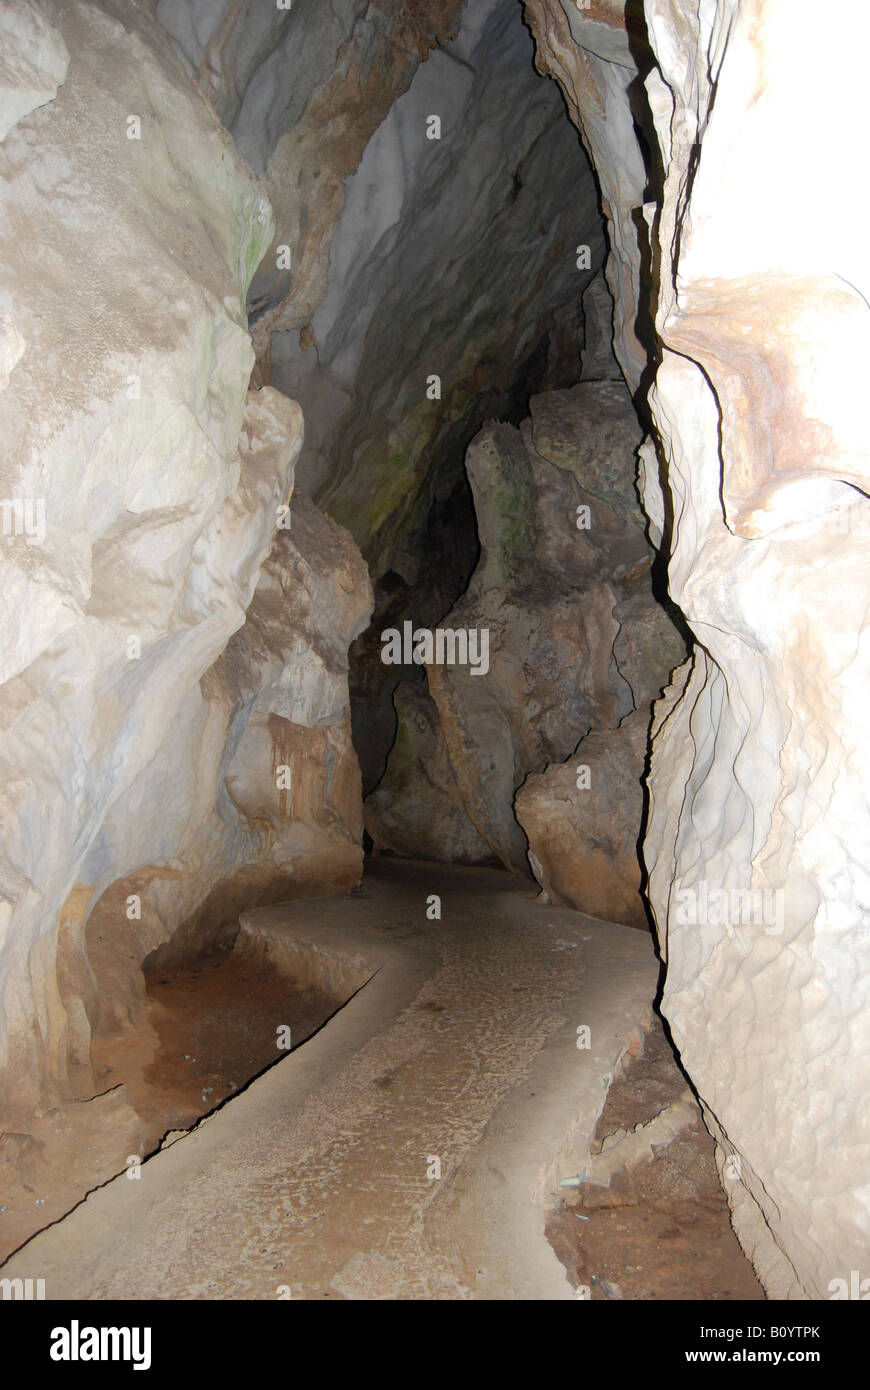 The Cueva del Indio Indian cave in the Parqu Nacional Vinales Stock Photo